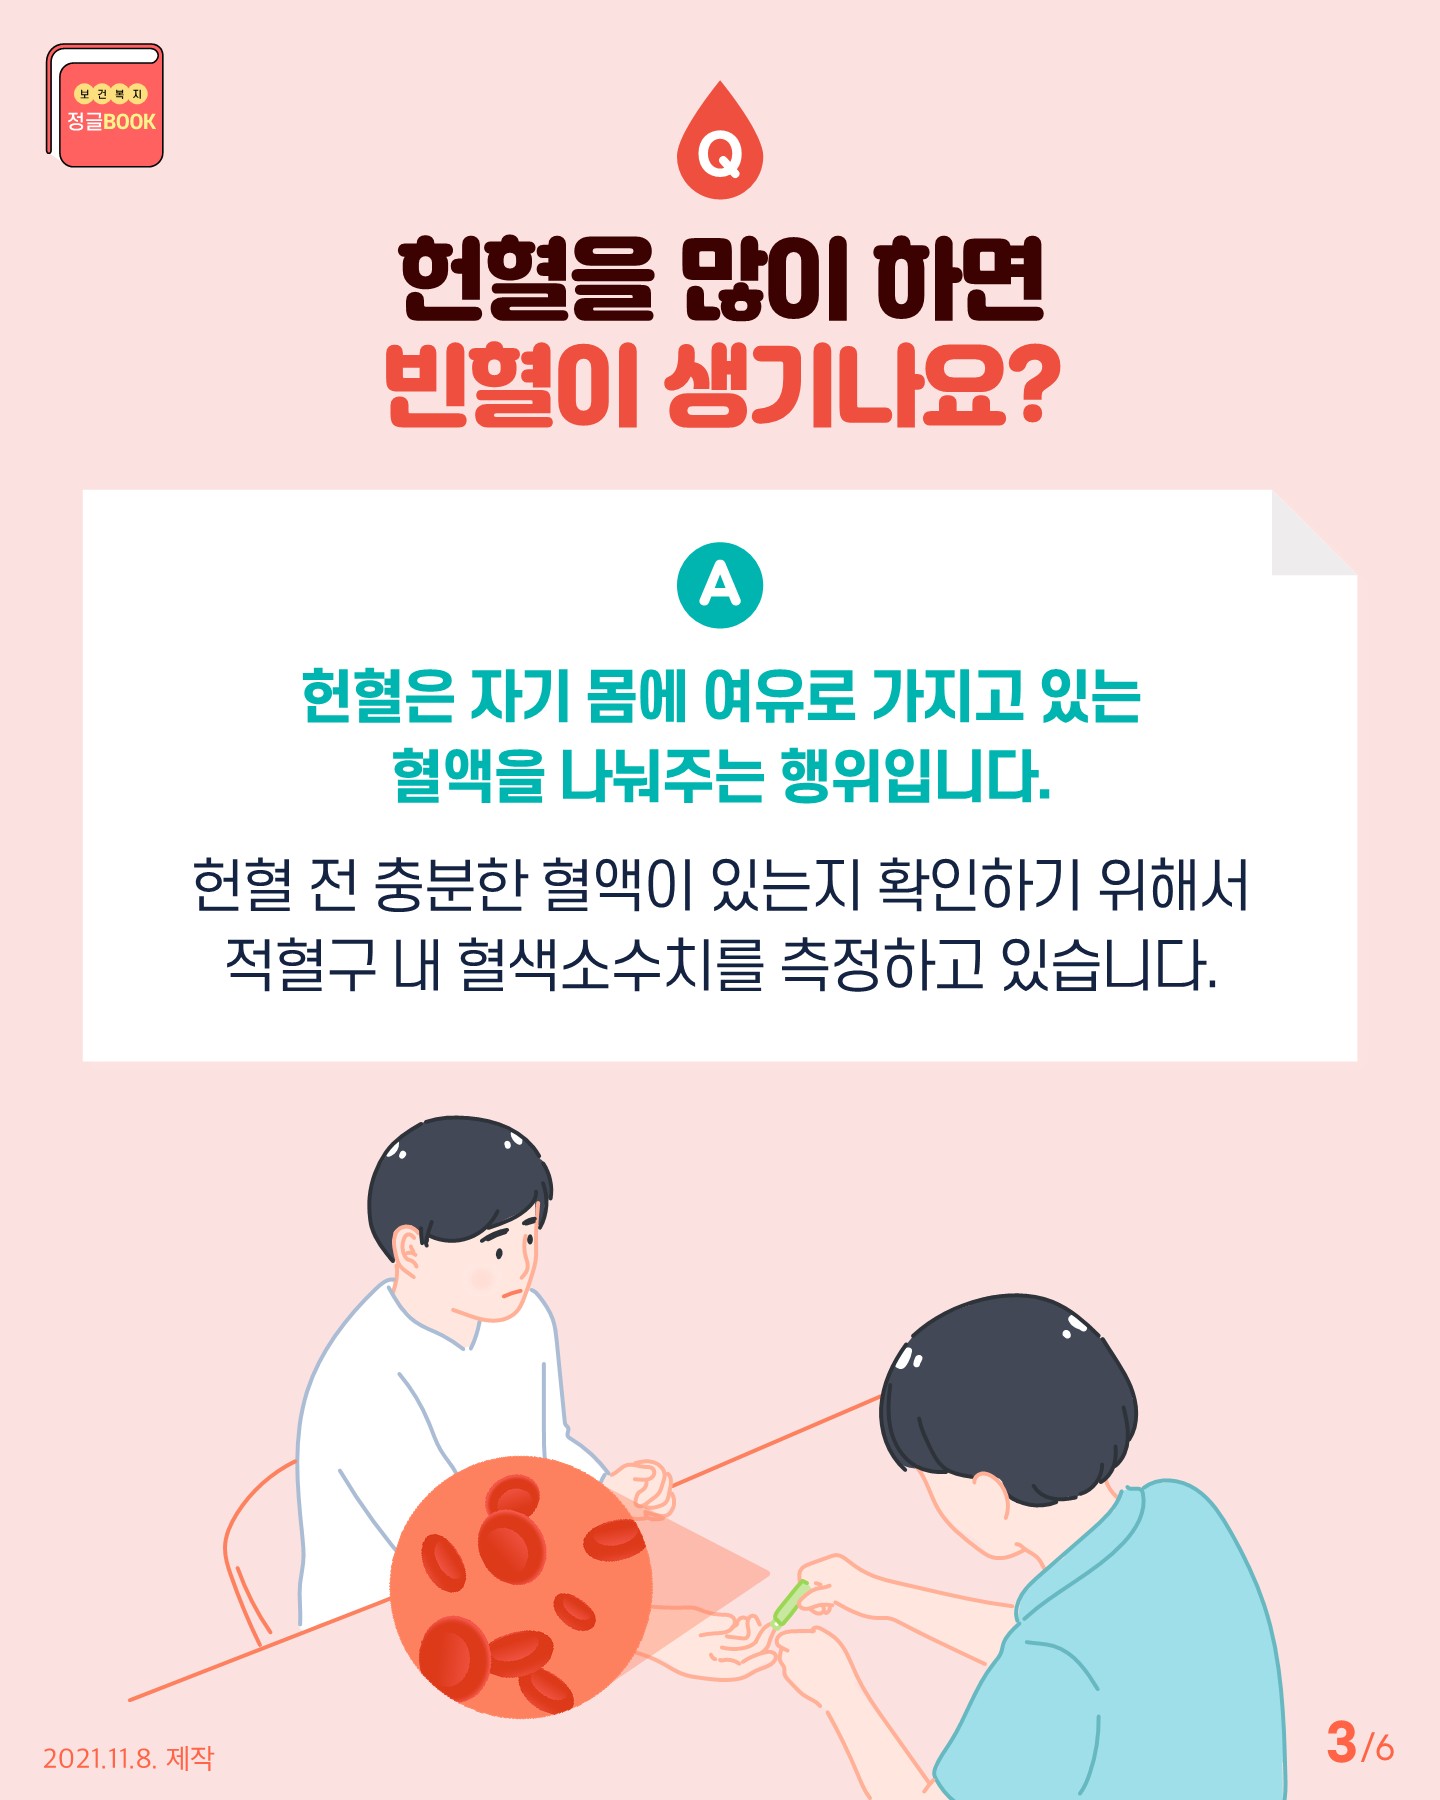 전라북도교육청 인성건강과_Q_A로 알아보는 헌혈 궁금증(카드뉴스)_3